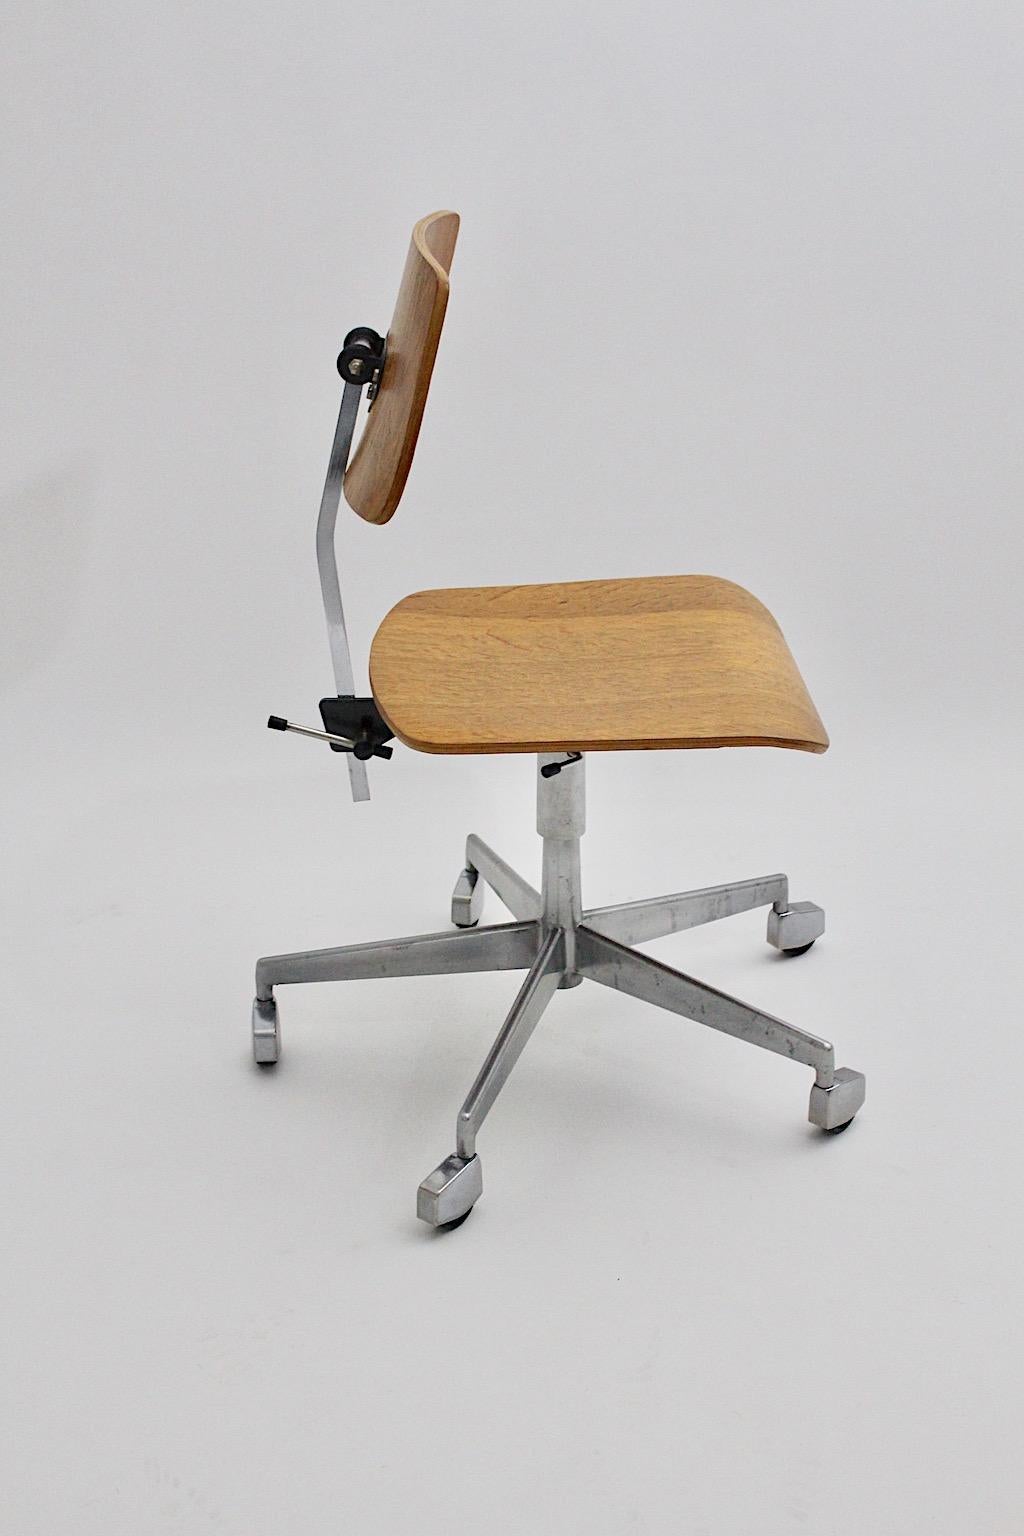 Skandinavisch Moderner Vintage-Schreibtischstuhl oder Bürostuhl mit Drehfunktion von Labofa aus verchromtem Metall und eichenlaminiertem Sperrholz
1950er Jahre Dänemark.
Ein wunderbarer, drehbarer Schreibtischstuhl aus eichenlaminiertem Sperrholz